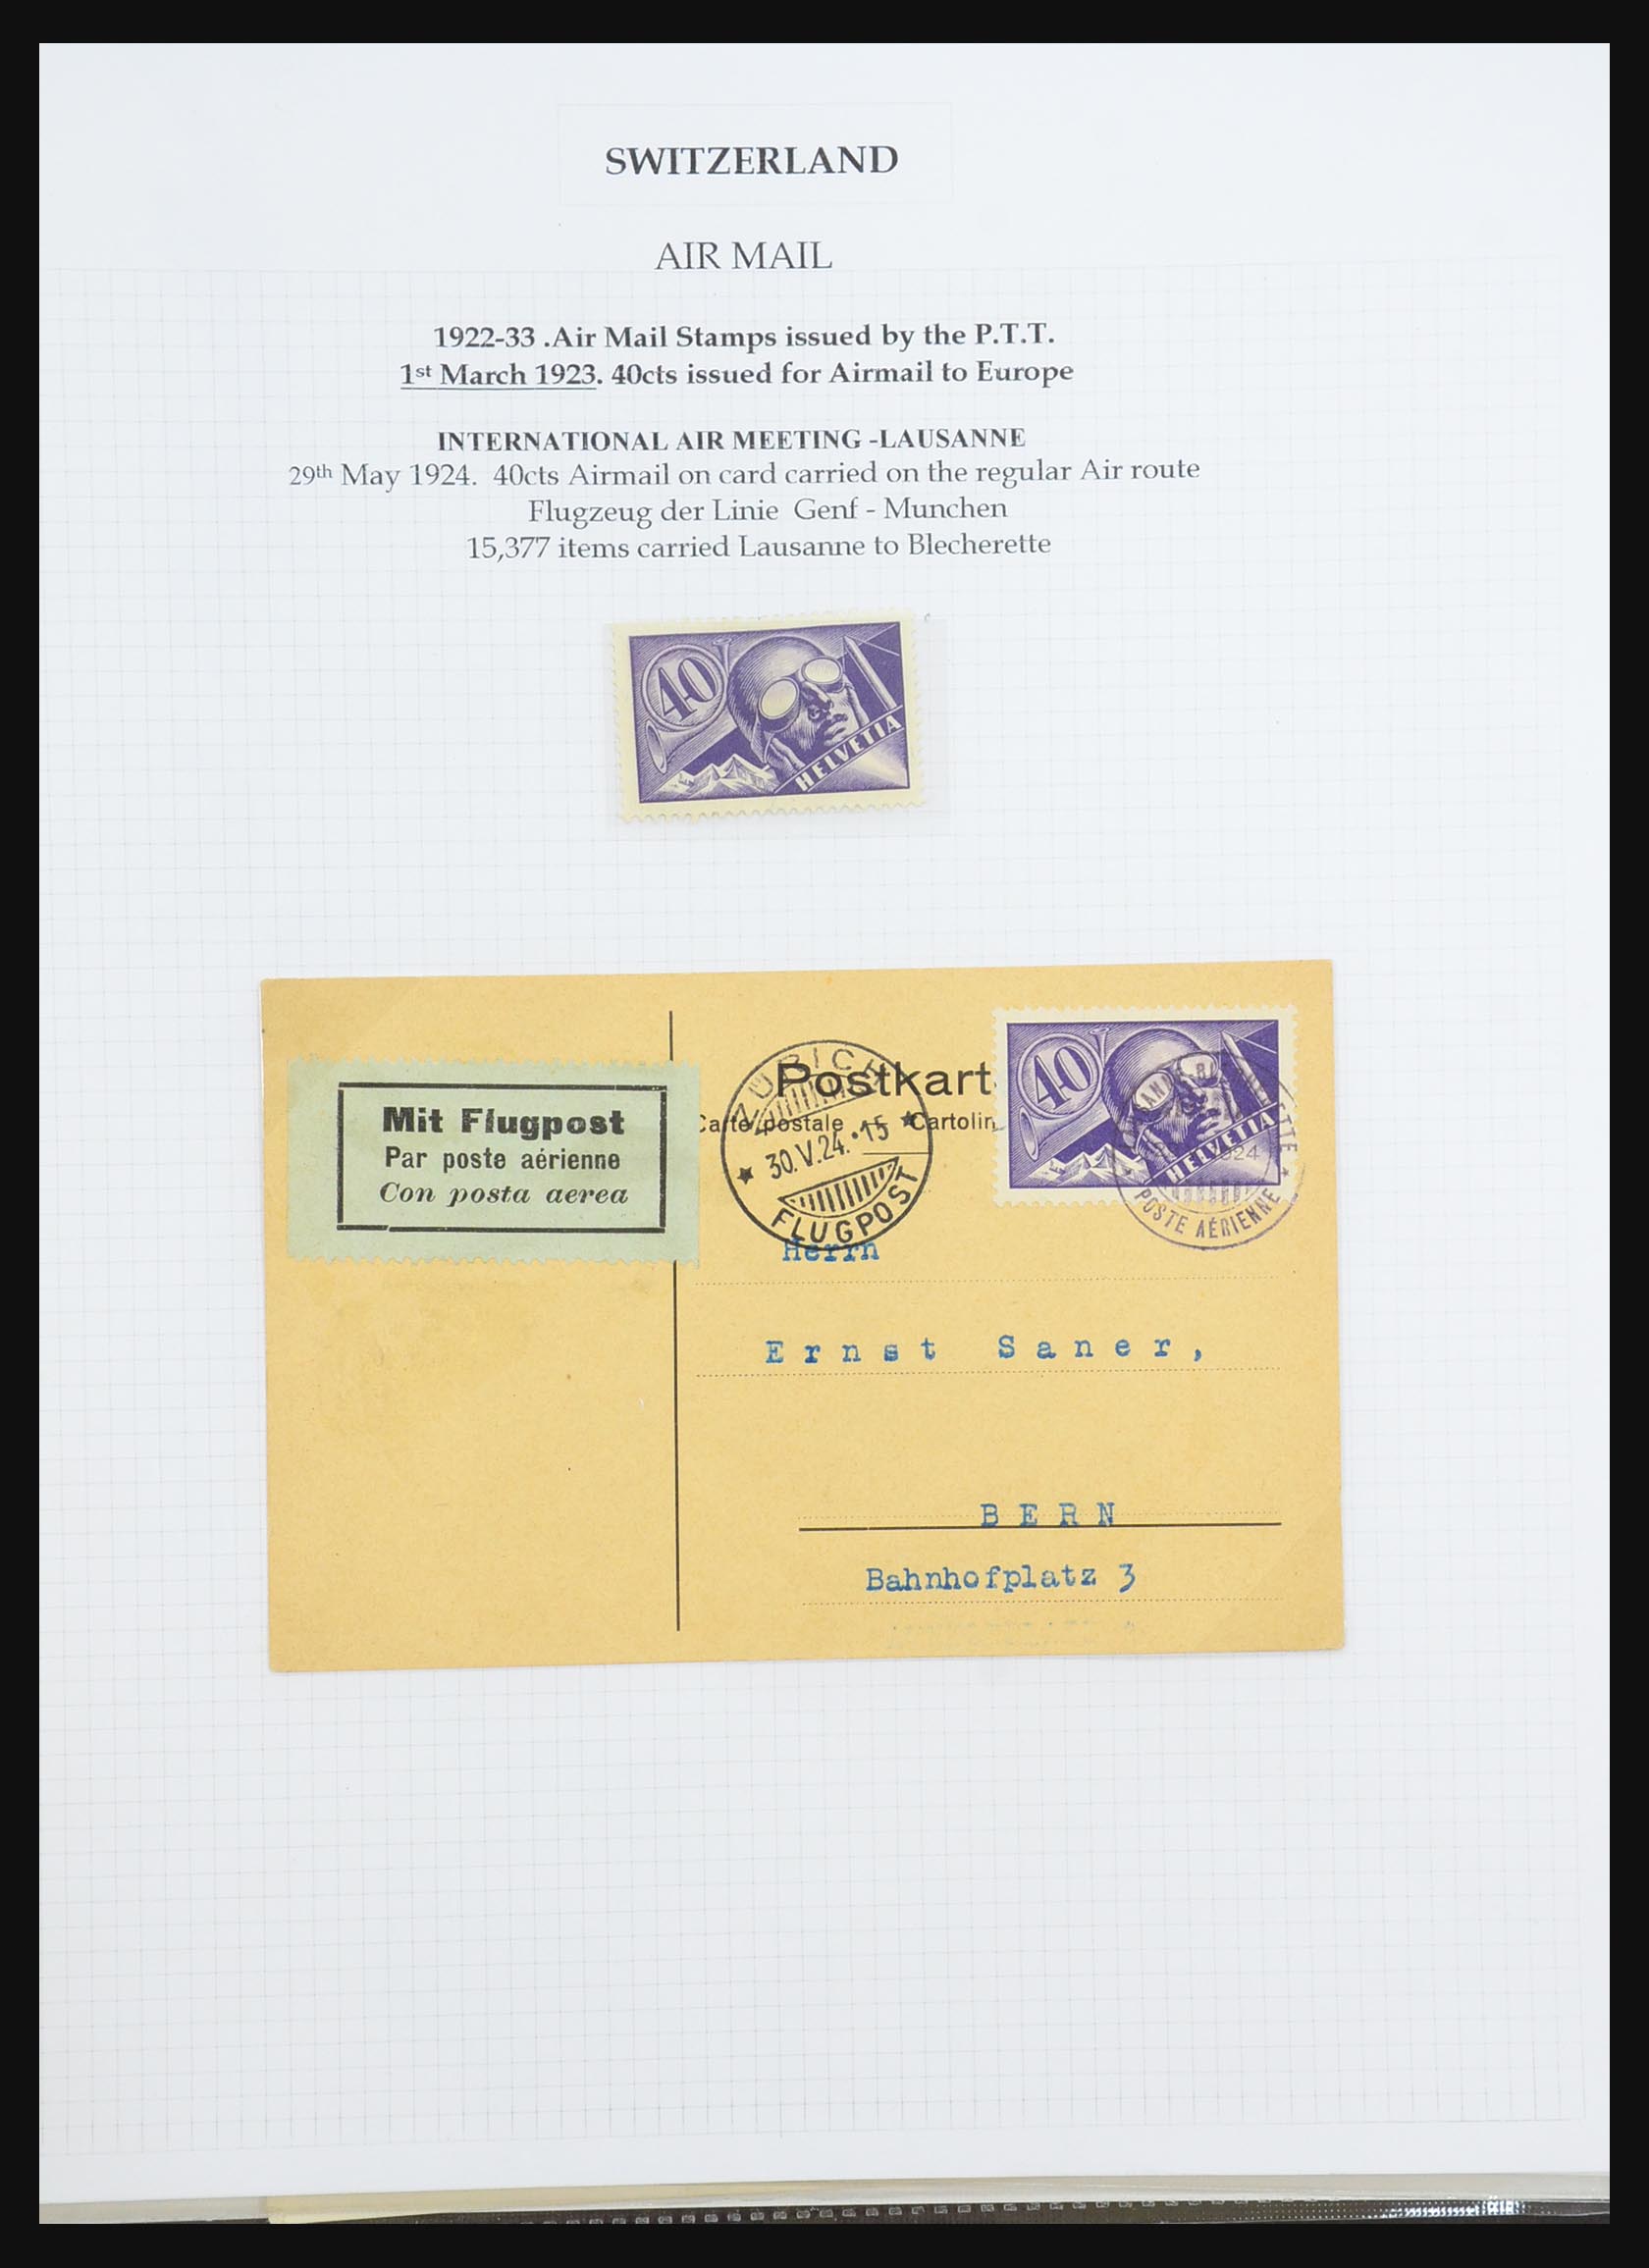 31444 011 - 31444 Zwitserland luchtpost brieven 1922-1946.